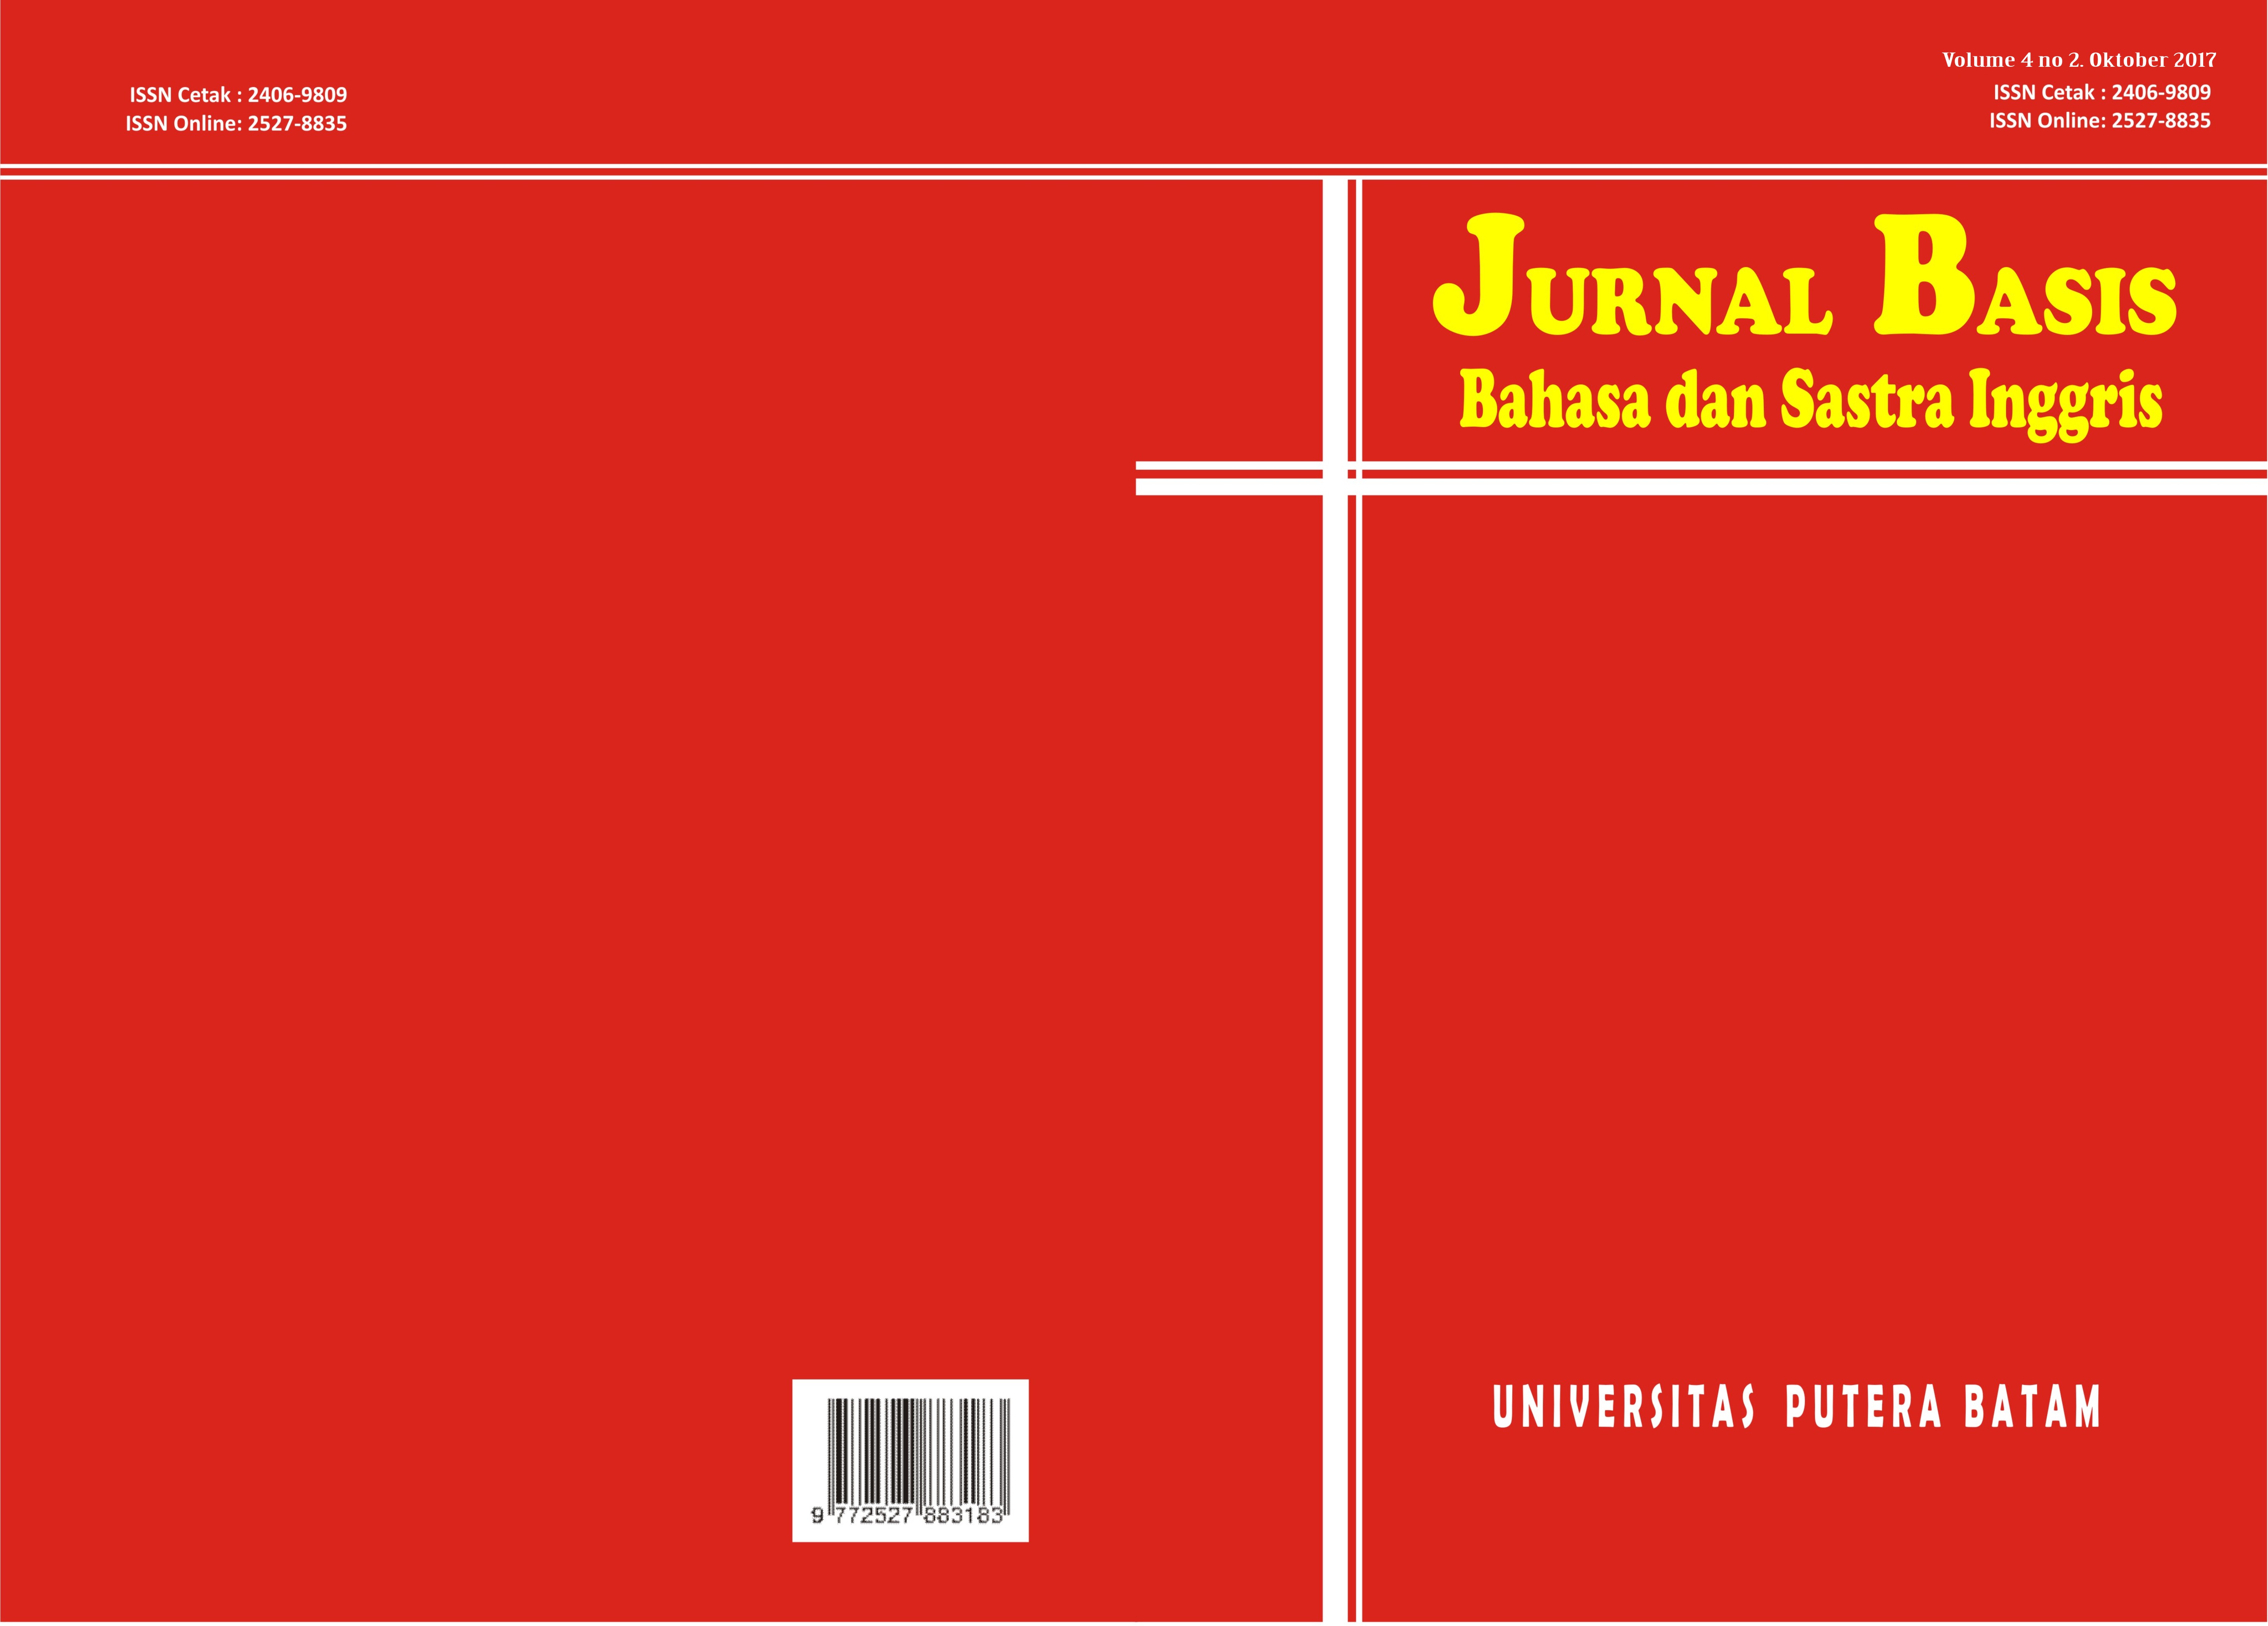 					View Vol. 4 No. 2 (2017): JURNAL BASIS UPB
				